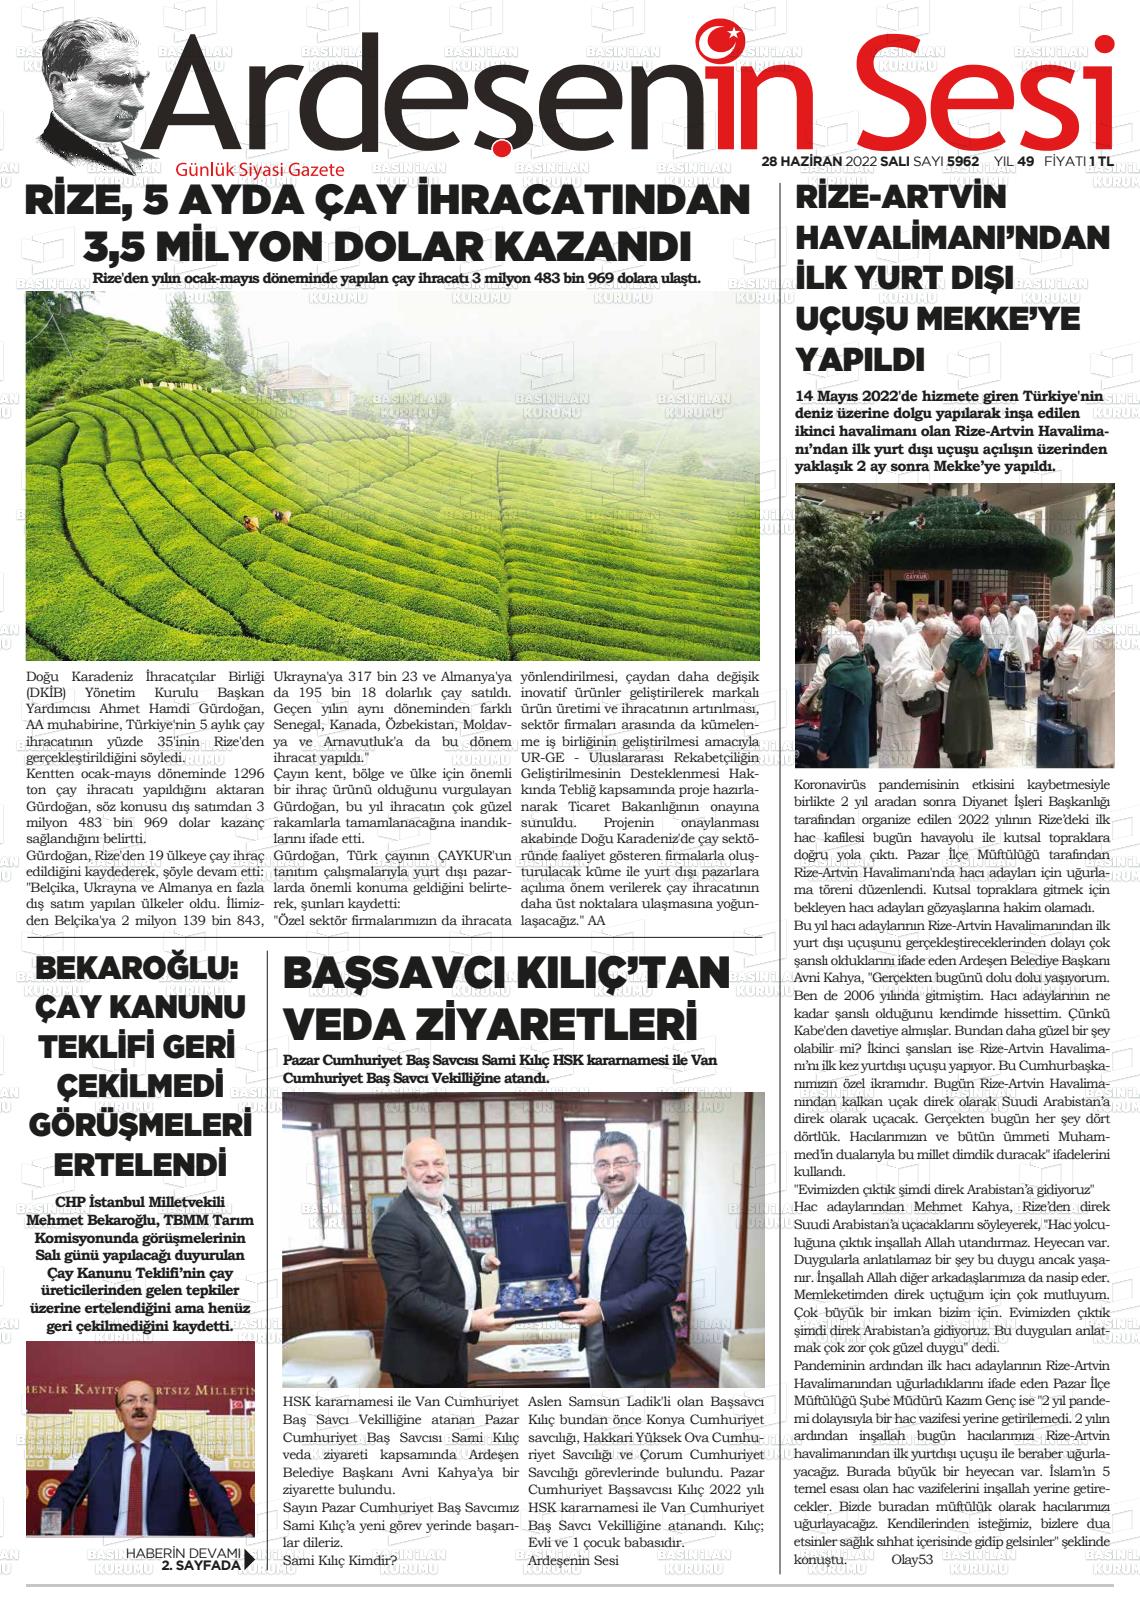 28 Haziran 2022 Ardeşenin Sesi Gazete Manşeti